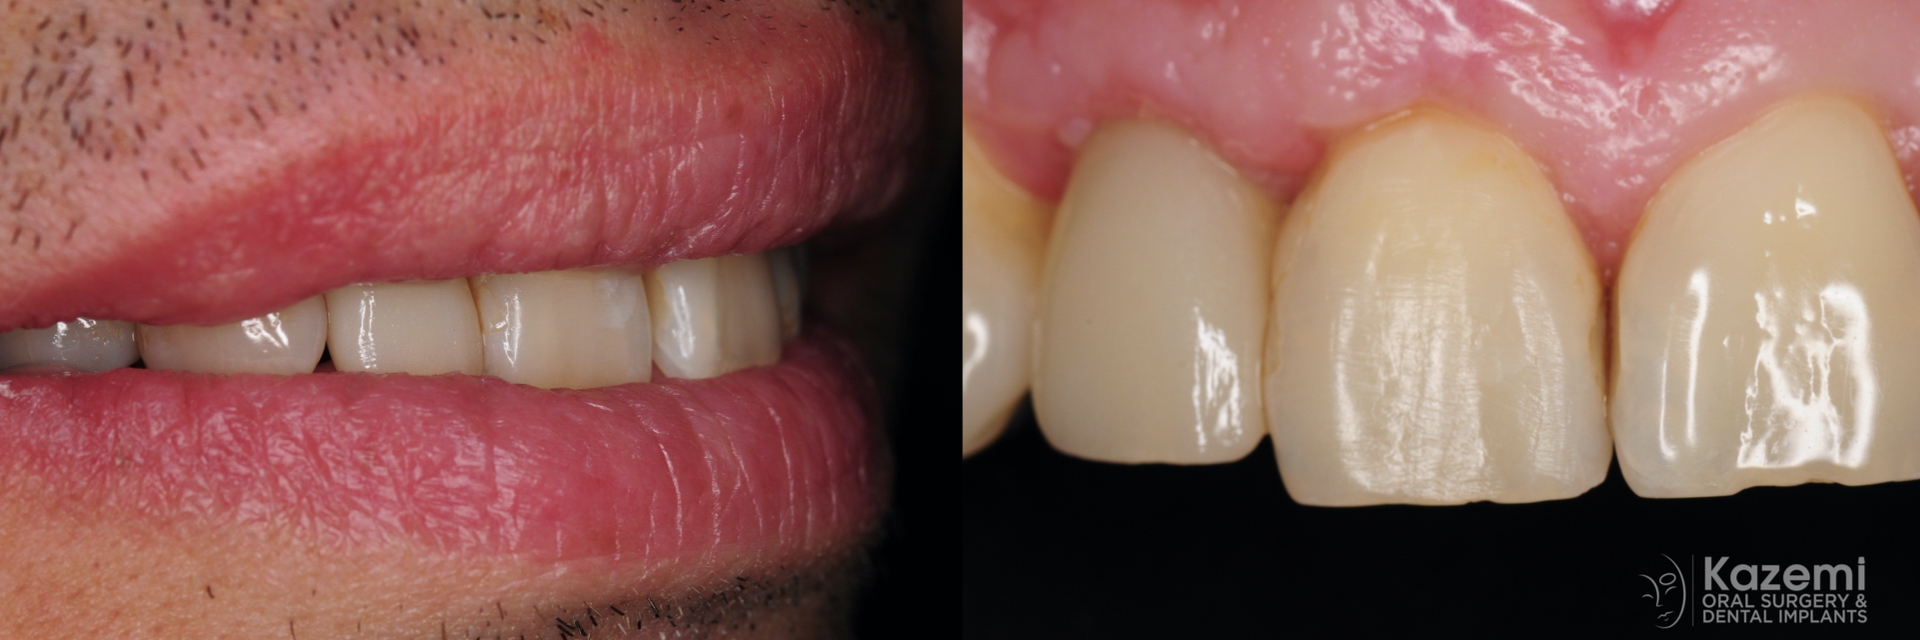 5.-smile-implant-crown-kazemi-oral-surgery